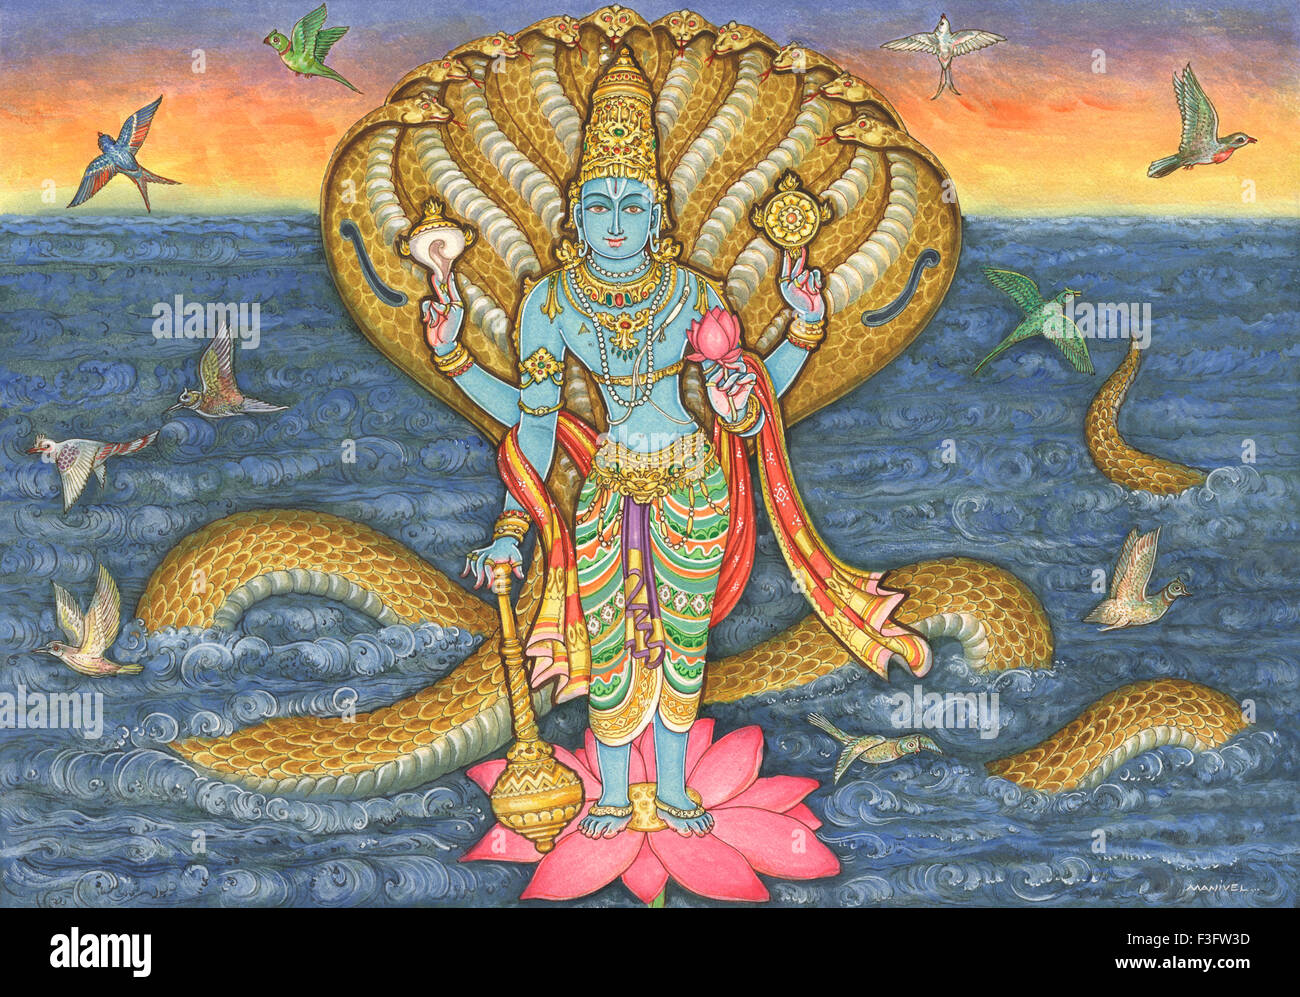 Peinture de dieu hindou Vishnu debout sur fleur de lotus et protégé par hydra dirigée snake in ocean Banque D'Images